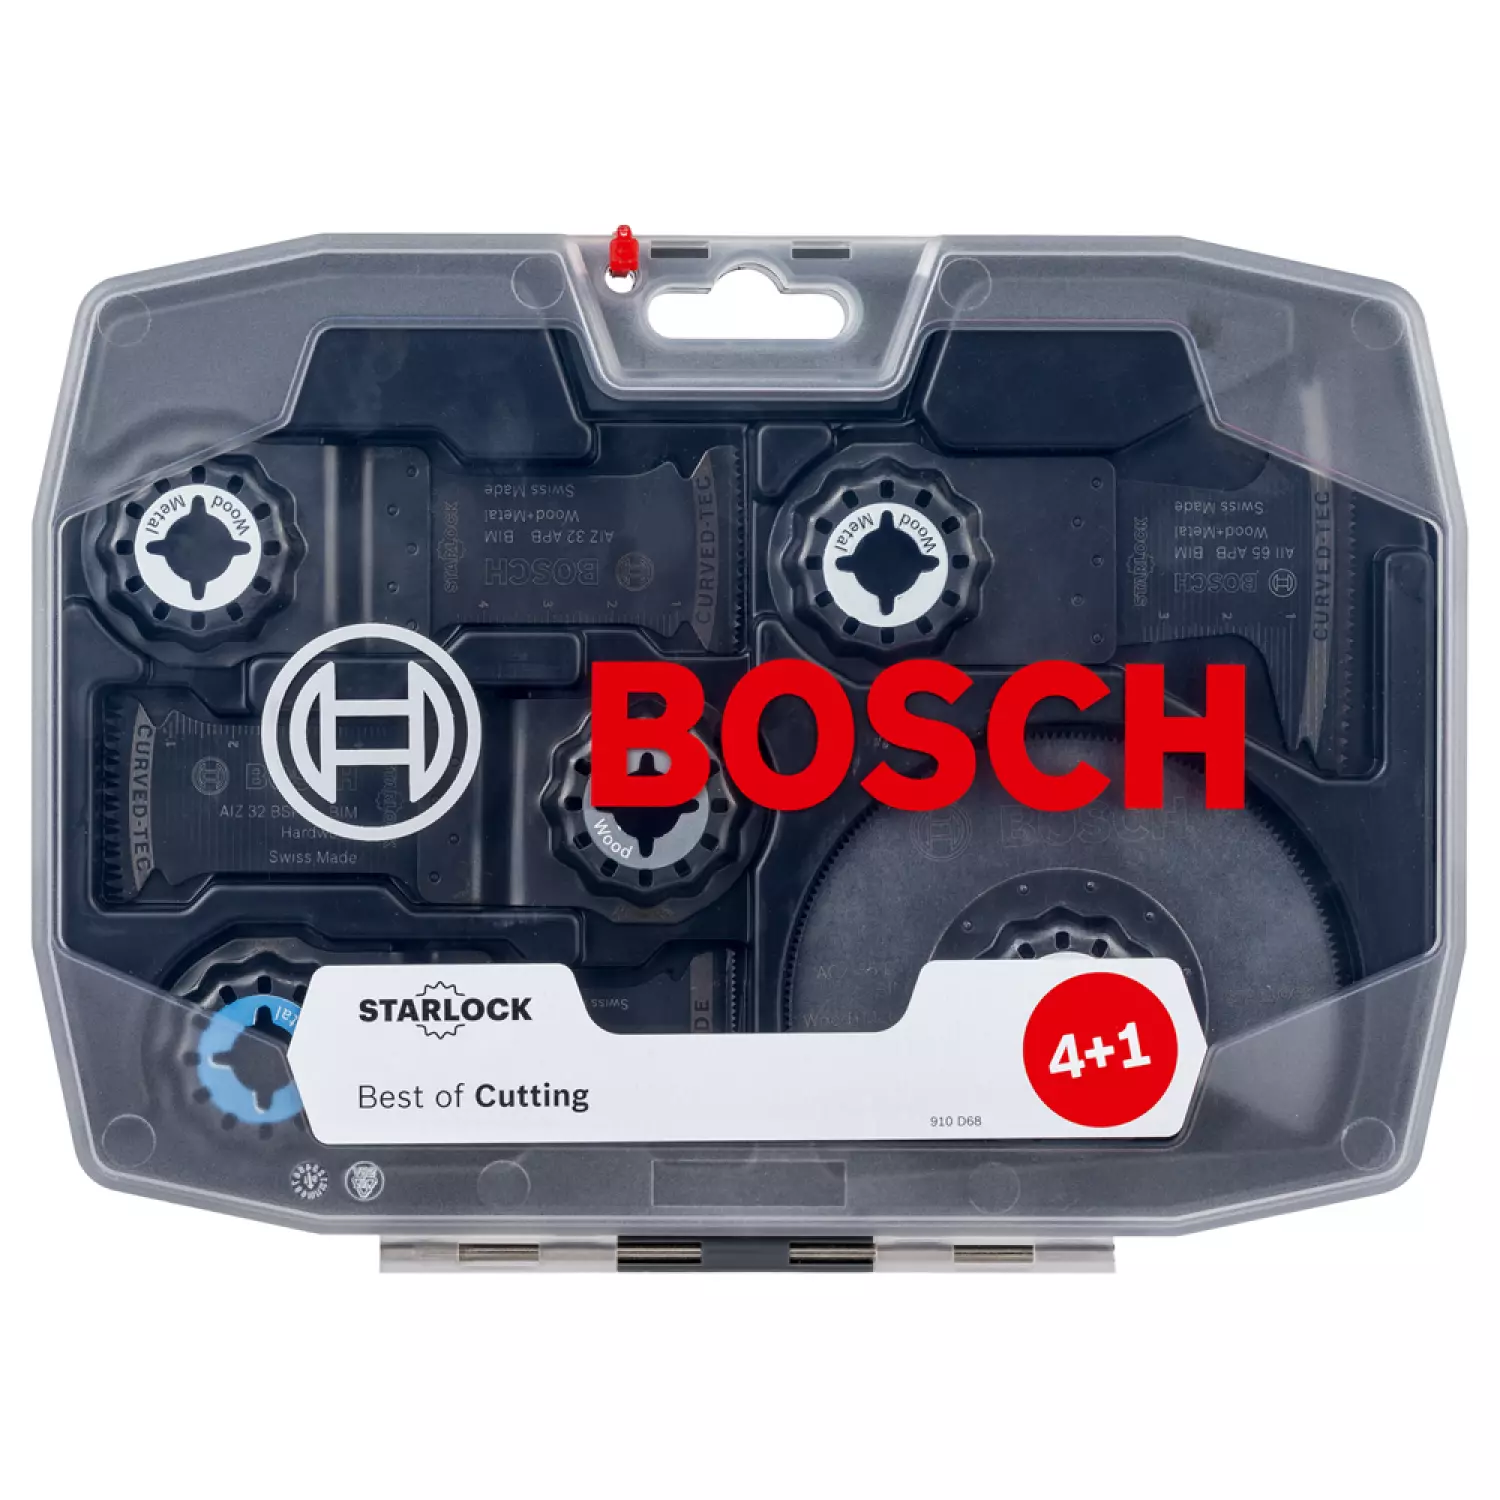 Bosch 2608664131 - Set 5 pièces Starlock Best of Cutting 4+1 AIZ 32 AT, AIZ 32 BSPB, AIZ 32 APB, AII 65 APB, ACZ 85 EB